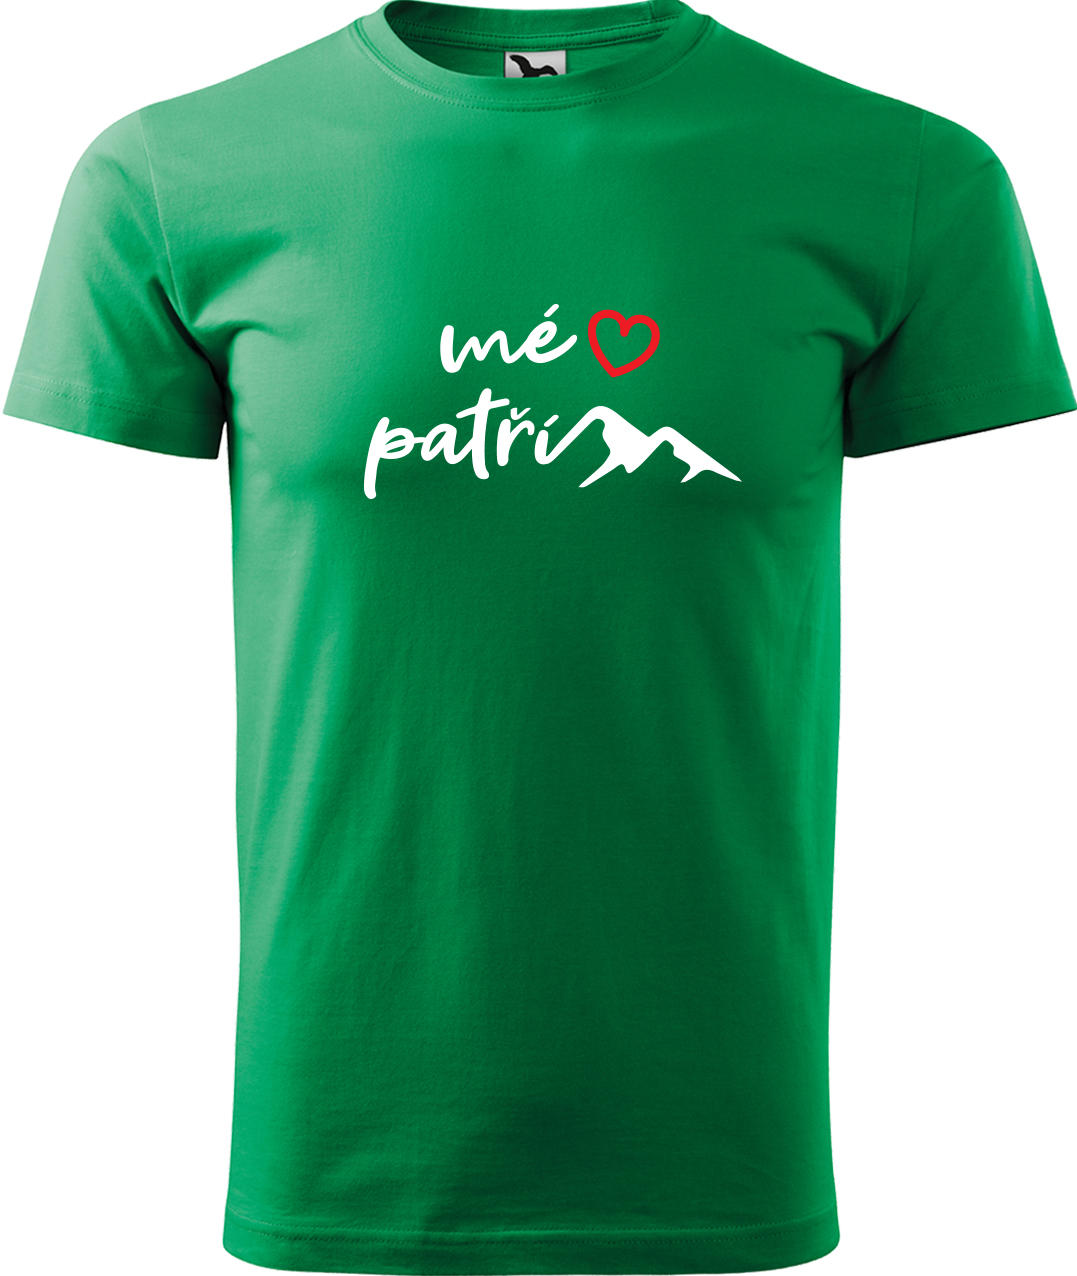 Pánské tričko na hory - Mé srdce patří horám Velikost: M, Barva: Středně zelená (16), Střih: pánský